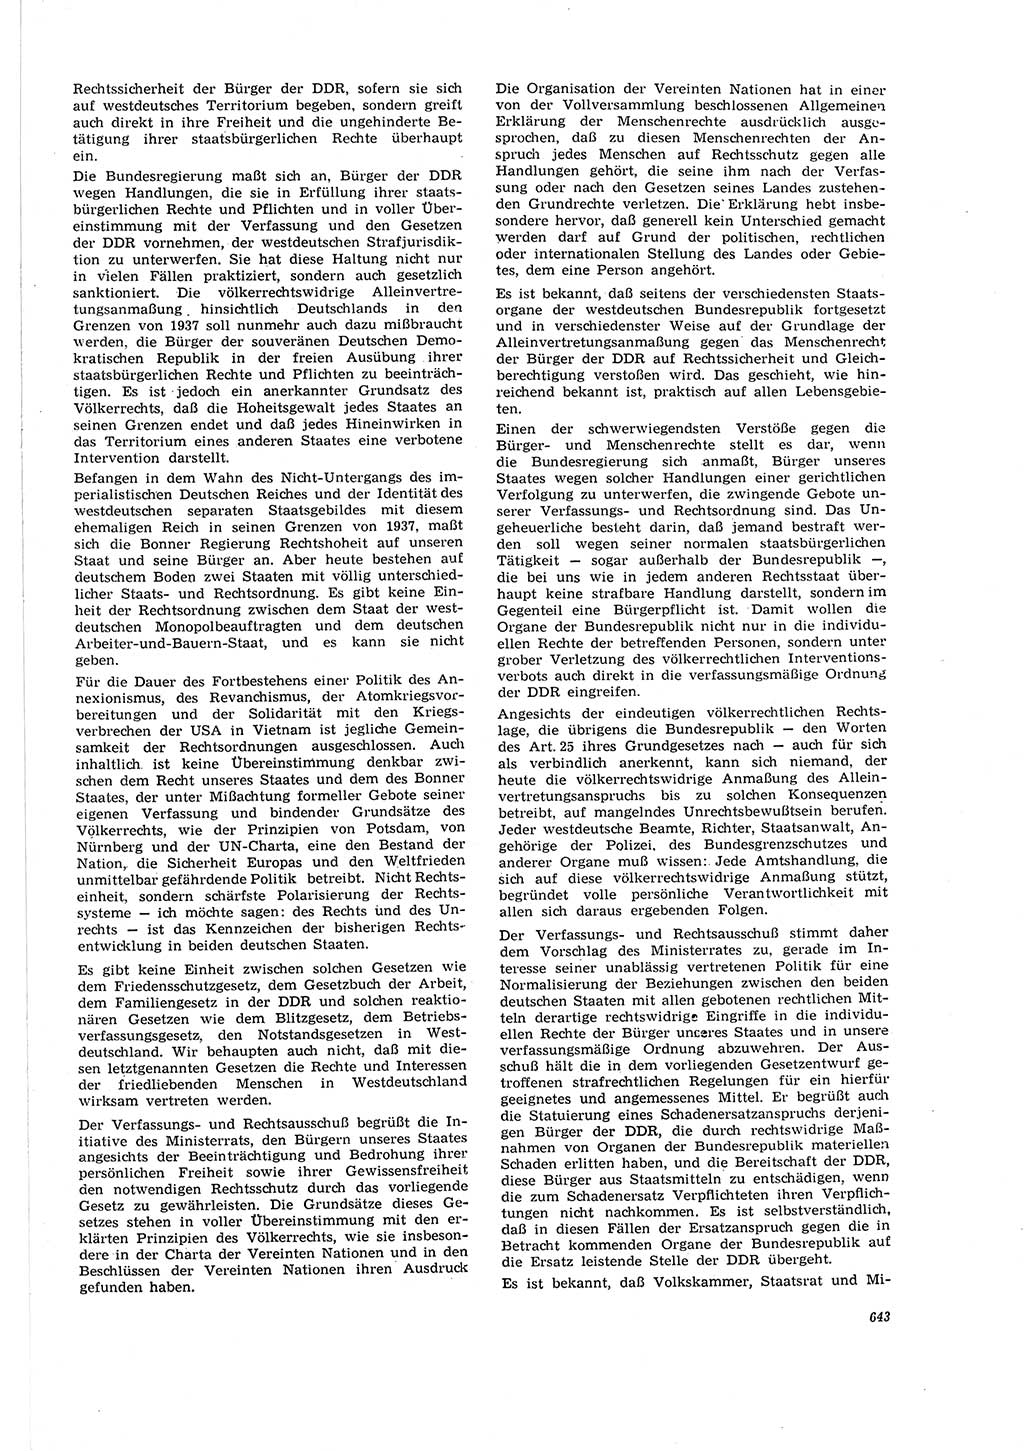 Neue Justiz (NJ), Zeitschrift für Recht und Rechtswissenschaft [Deutsche Demokratische Republik (DDR)], 20. Jahrgang 1966, Seite 643 (NJ DDR 1966, S. 643)